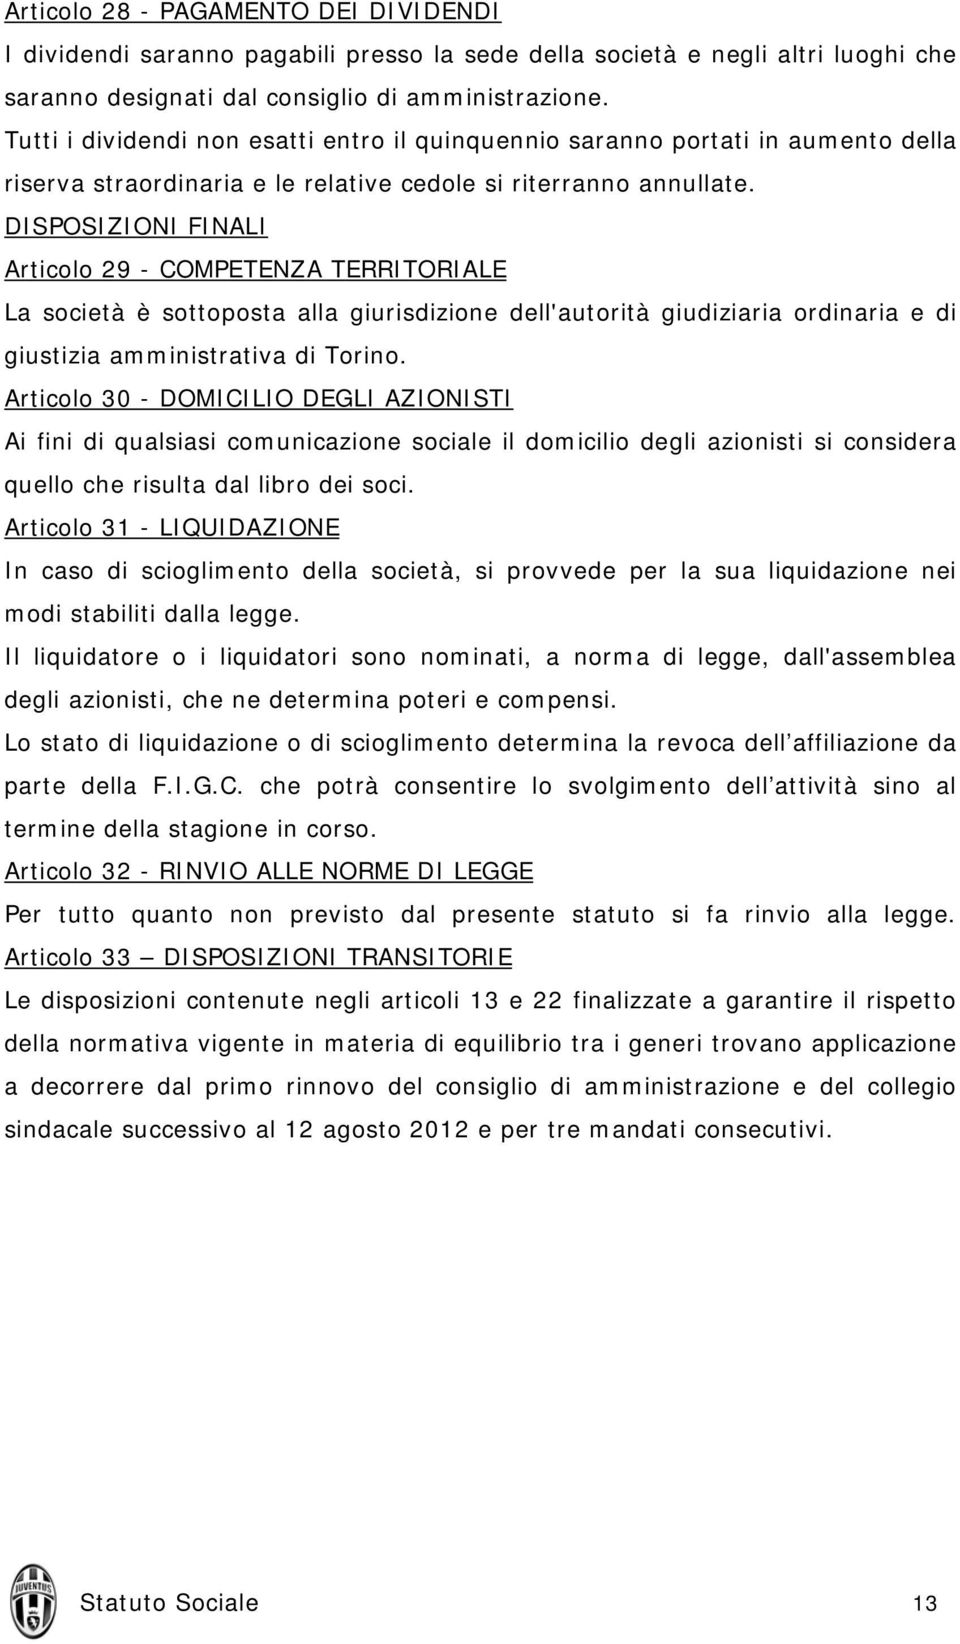 DISPOSIZIONI FINALI Articolo 29 - COMPETENZA TERRITORIALE La società è sottoposta alla giurisdizione dell'autorità giudiziaria ordinaria e di giustizia amministrativa di Torino.